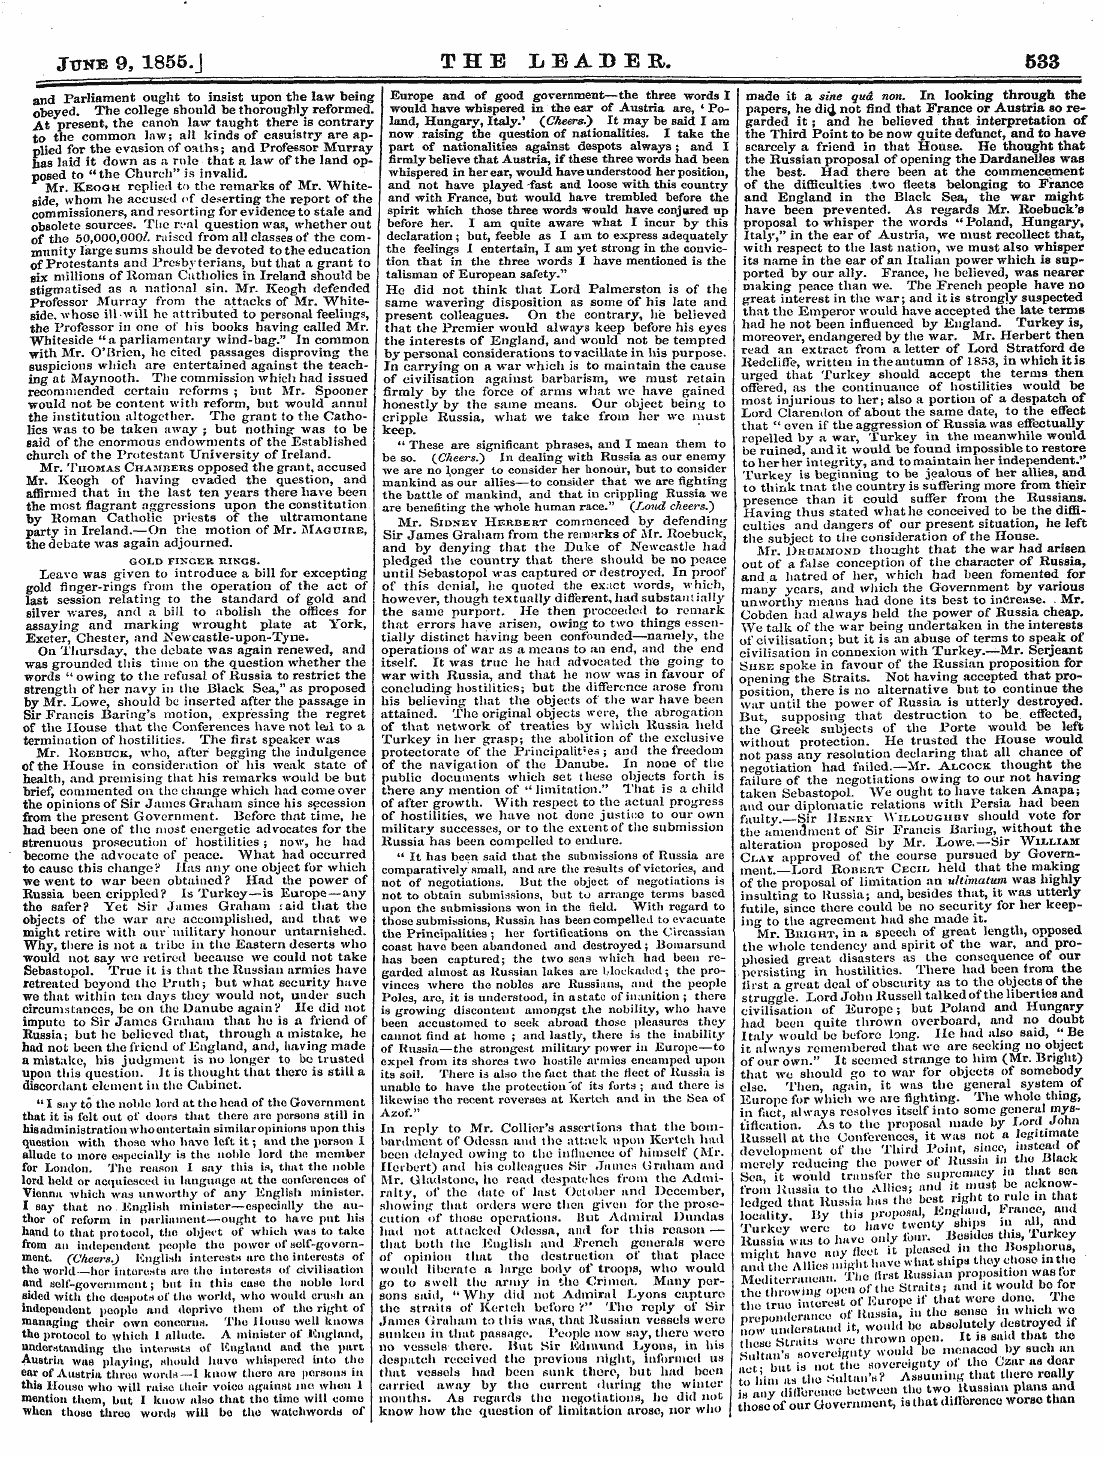 Leader (1850-1860): jS F Y, 2nd edition - June 9, 1855.J The Leader. 533